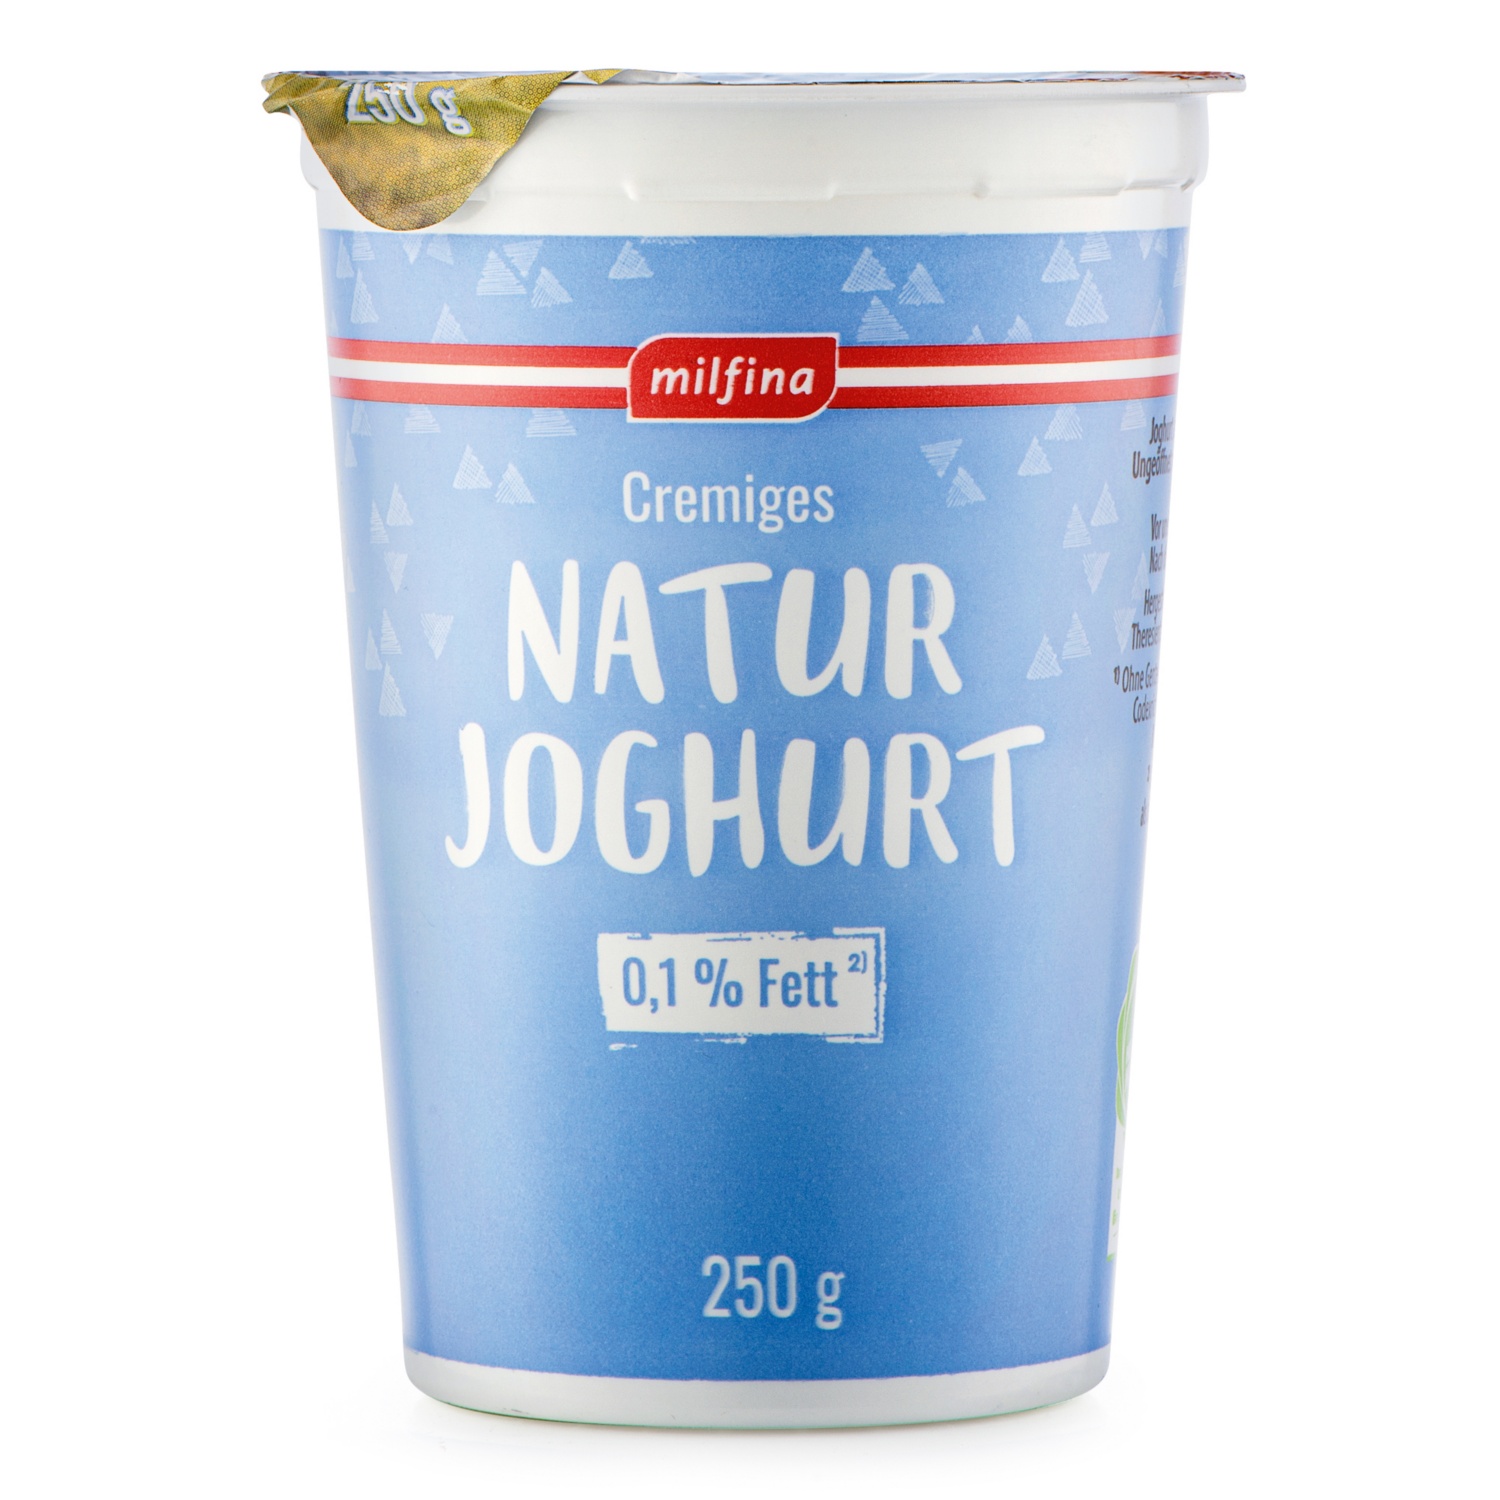 MILFINA Joghurt 0,1% Fett